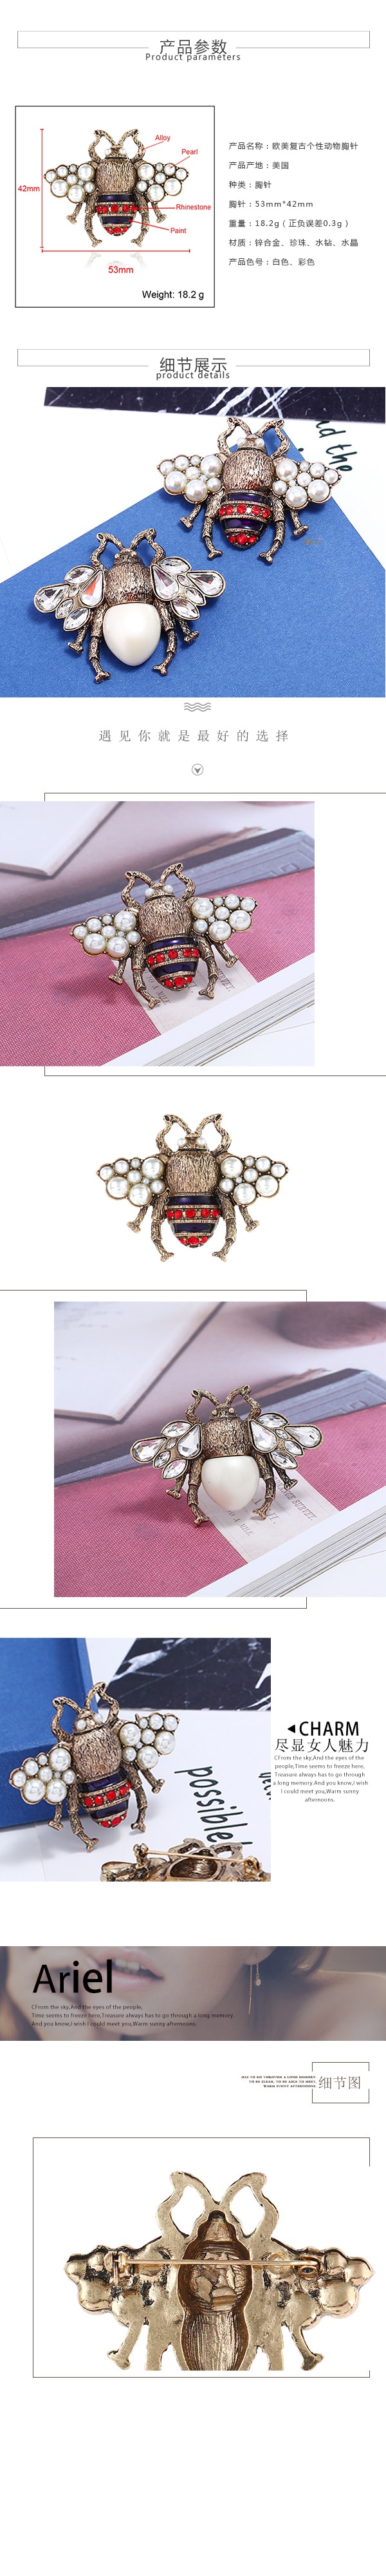 Designer Antique Bee Pin